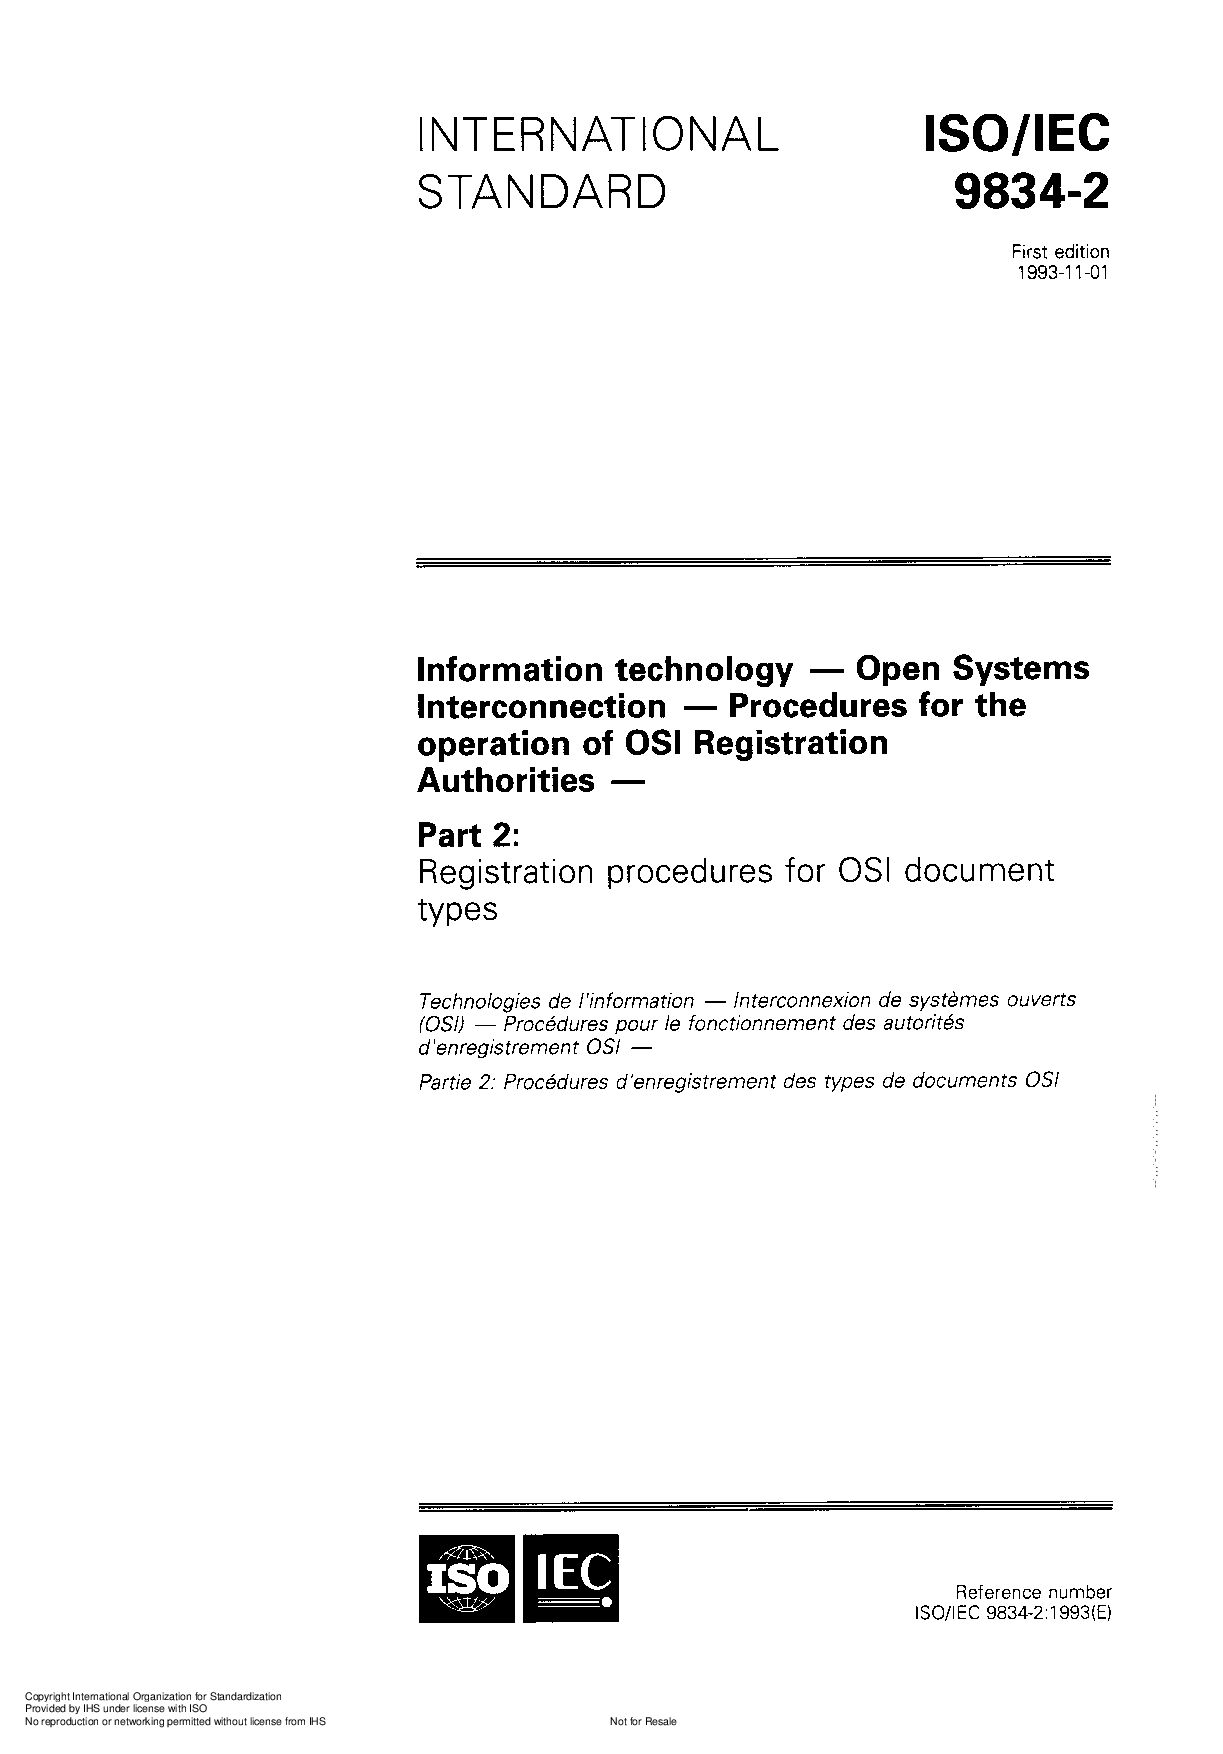 ISO/IEC 9834-2:1993封面图